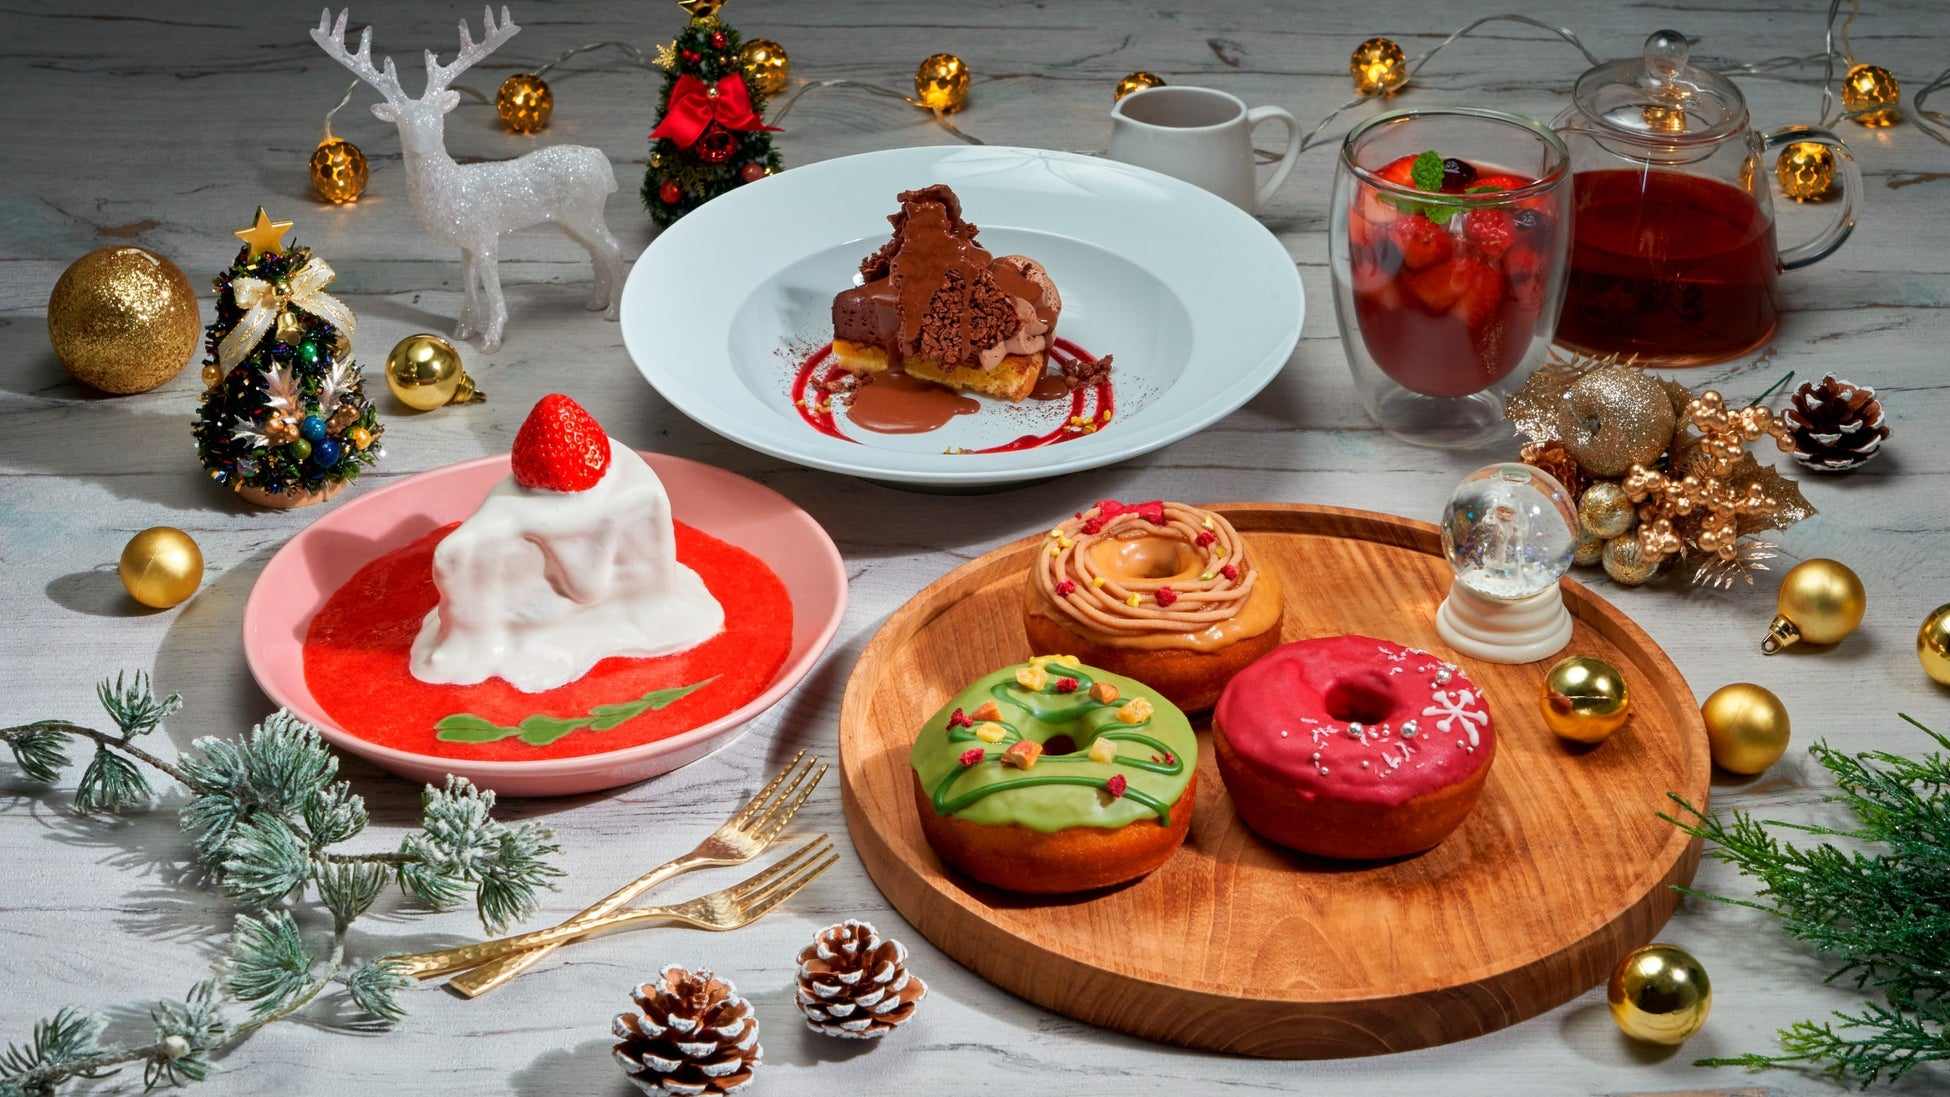 プラントベースフードブランド「2foods」から、ホリデーシーズンを彩る とろけるショートケーキと濃厚ショコラタルト 店舗メニューで11月1日登場